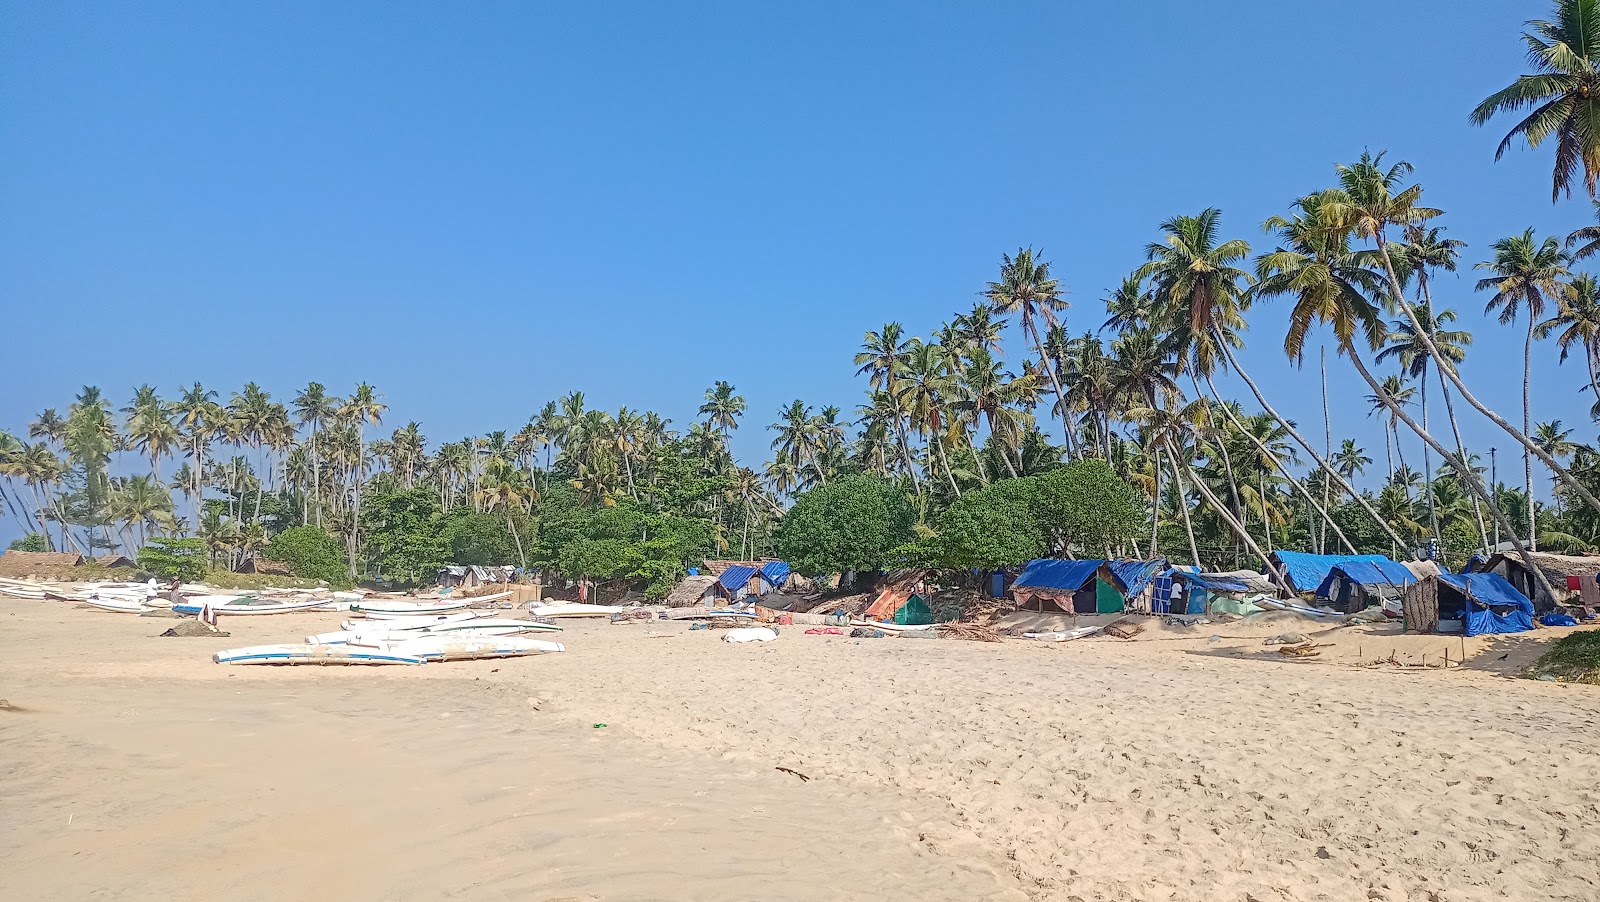 Fotografie cu Chillakkal Beach cu plajă spațioasă